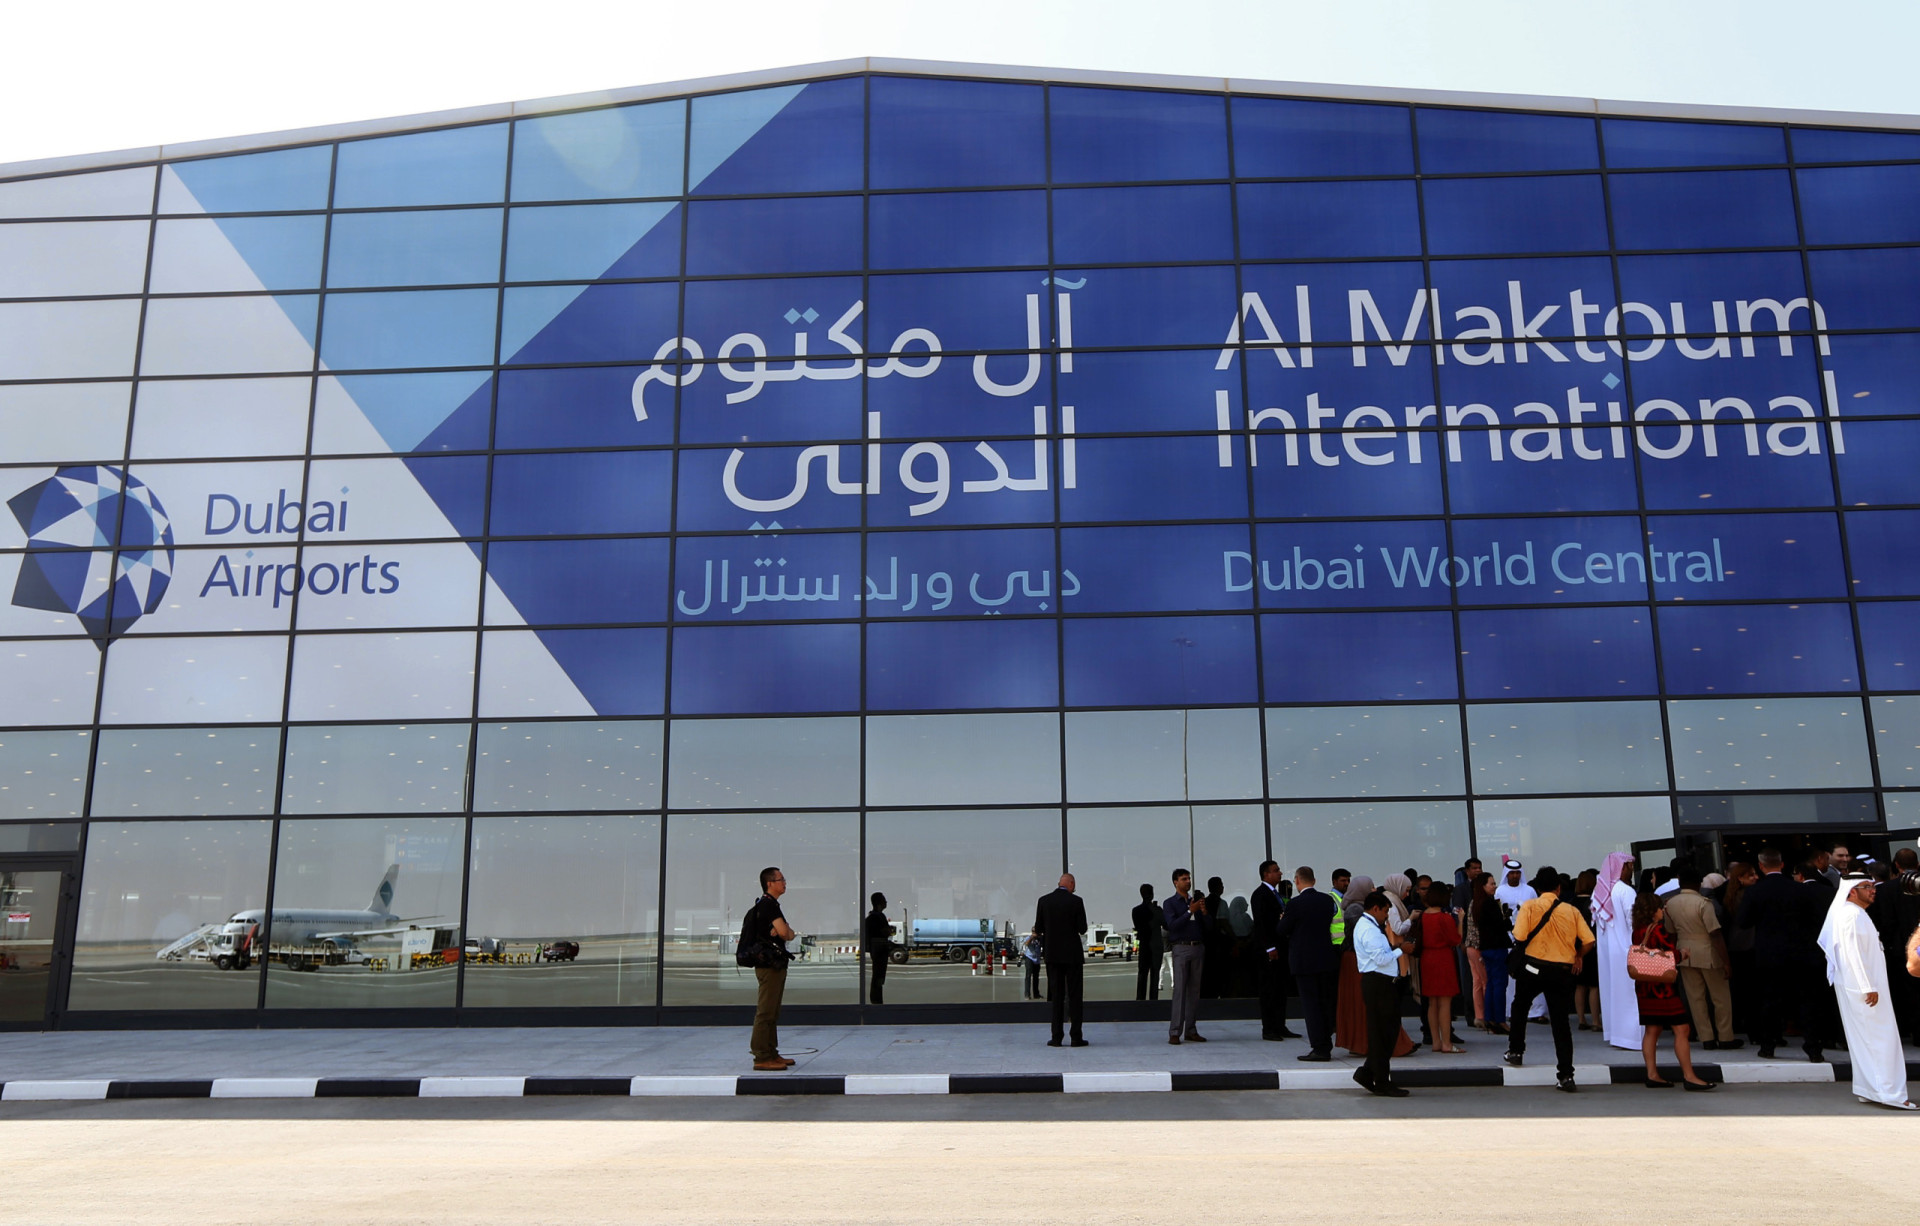 <p>Les Émirats arabes unis ont investi dans l'agrandissement de l'aéroport international Al Maktoum, qui devrait coûter 80 milliards de dollars au total, soit 74 milliards d'euros.</p><p><a href="https://www.msn.com/fr-fr/community/channel/vid-7xx8mnucu55yw63we9va2gwr7uihbxwc68fxqp25x6tg4ftibpra?cvid=94631541bc0f4f89bfd59158d696ad7e">Suivez-nous et accédez tous les jours à du contenu exclusif</a></p>